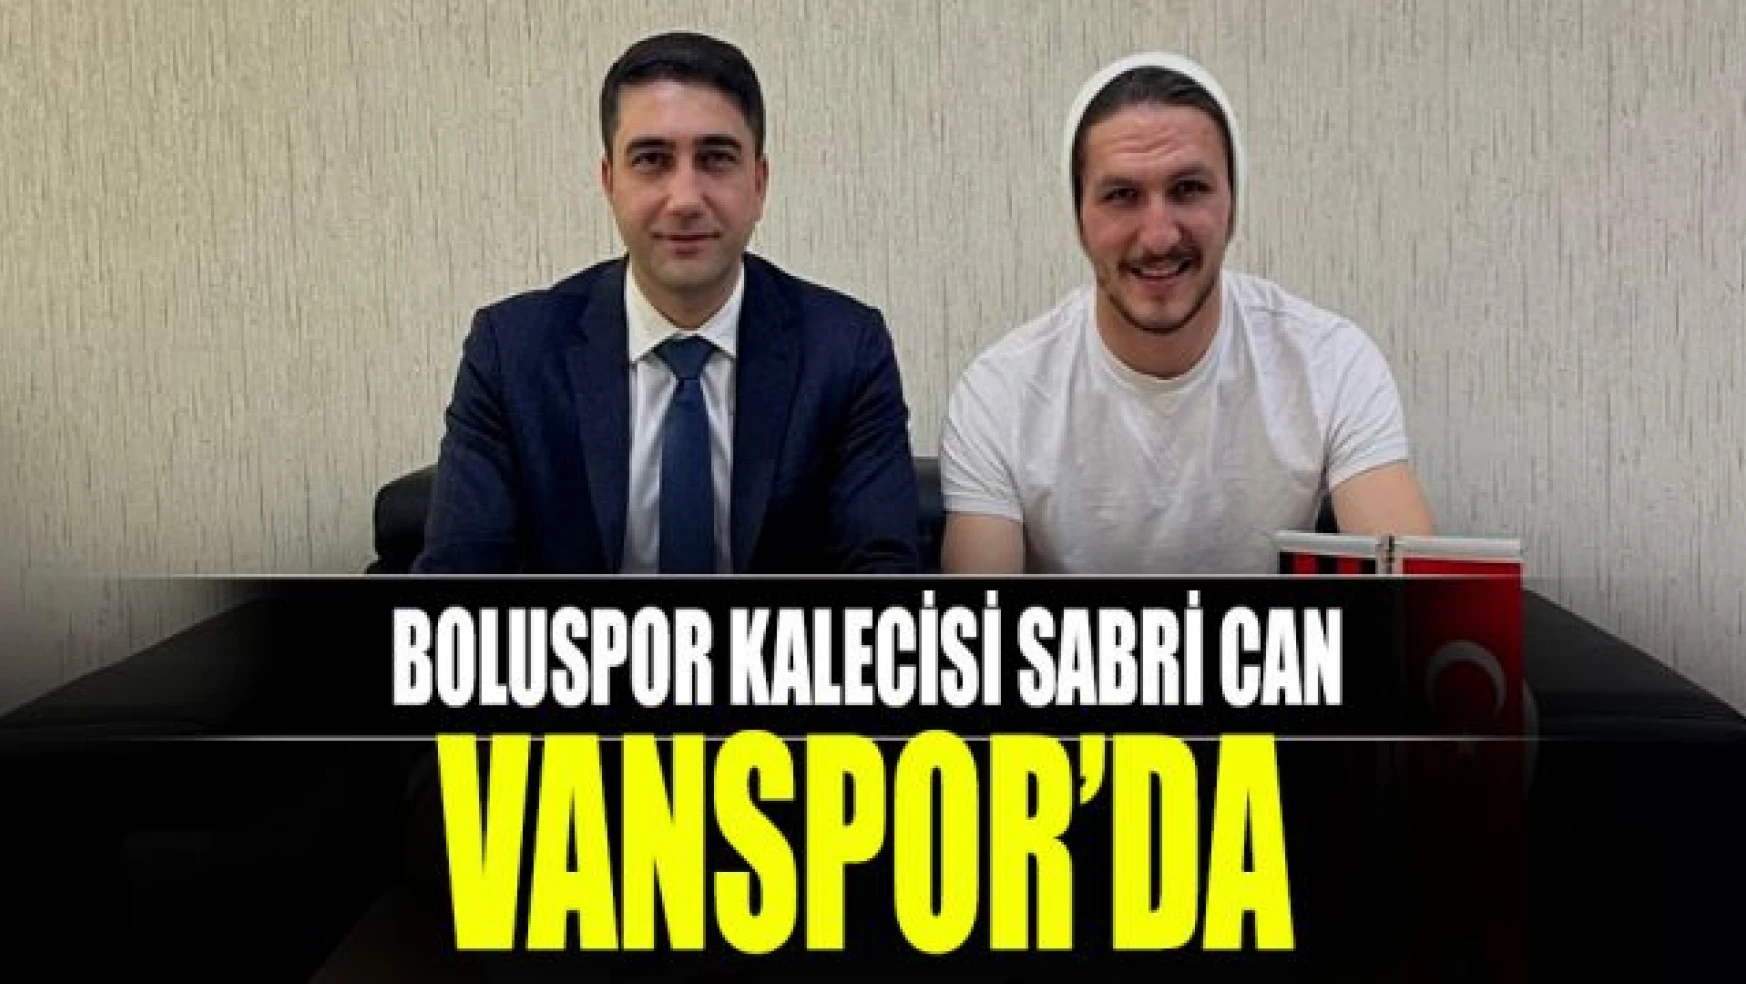 Boluspor'un kalecisi Sabri Can Vanspor'da!